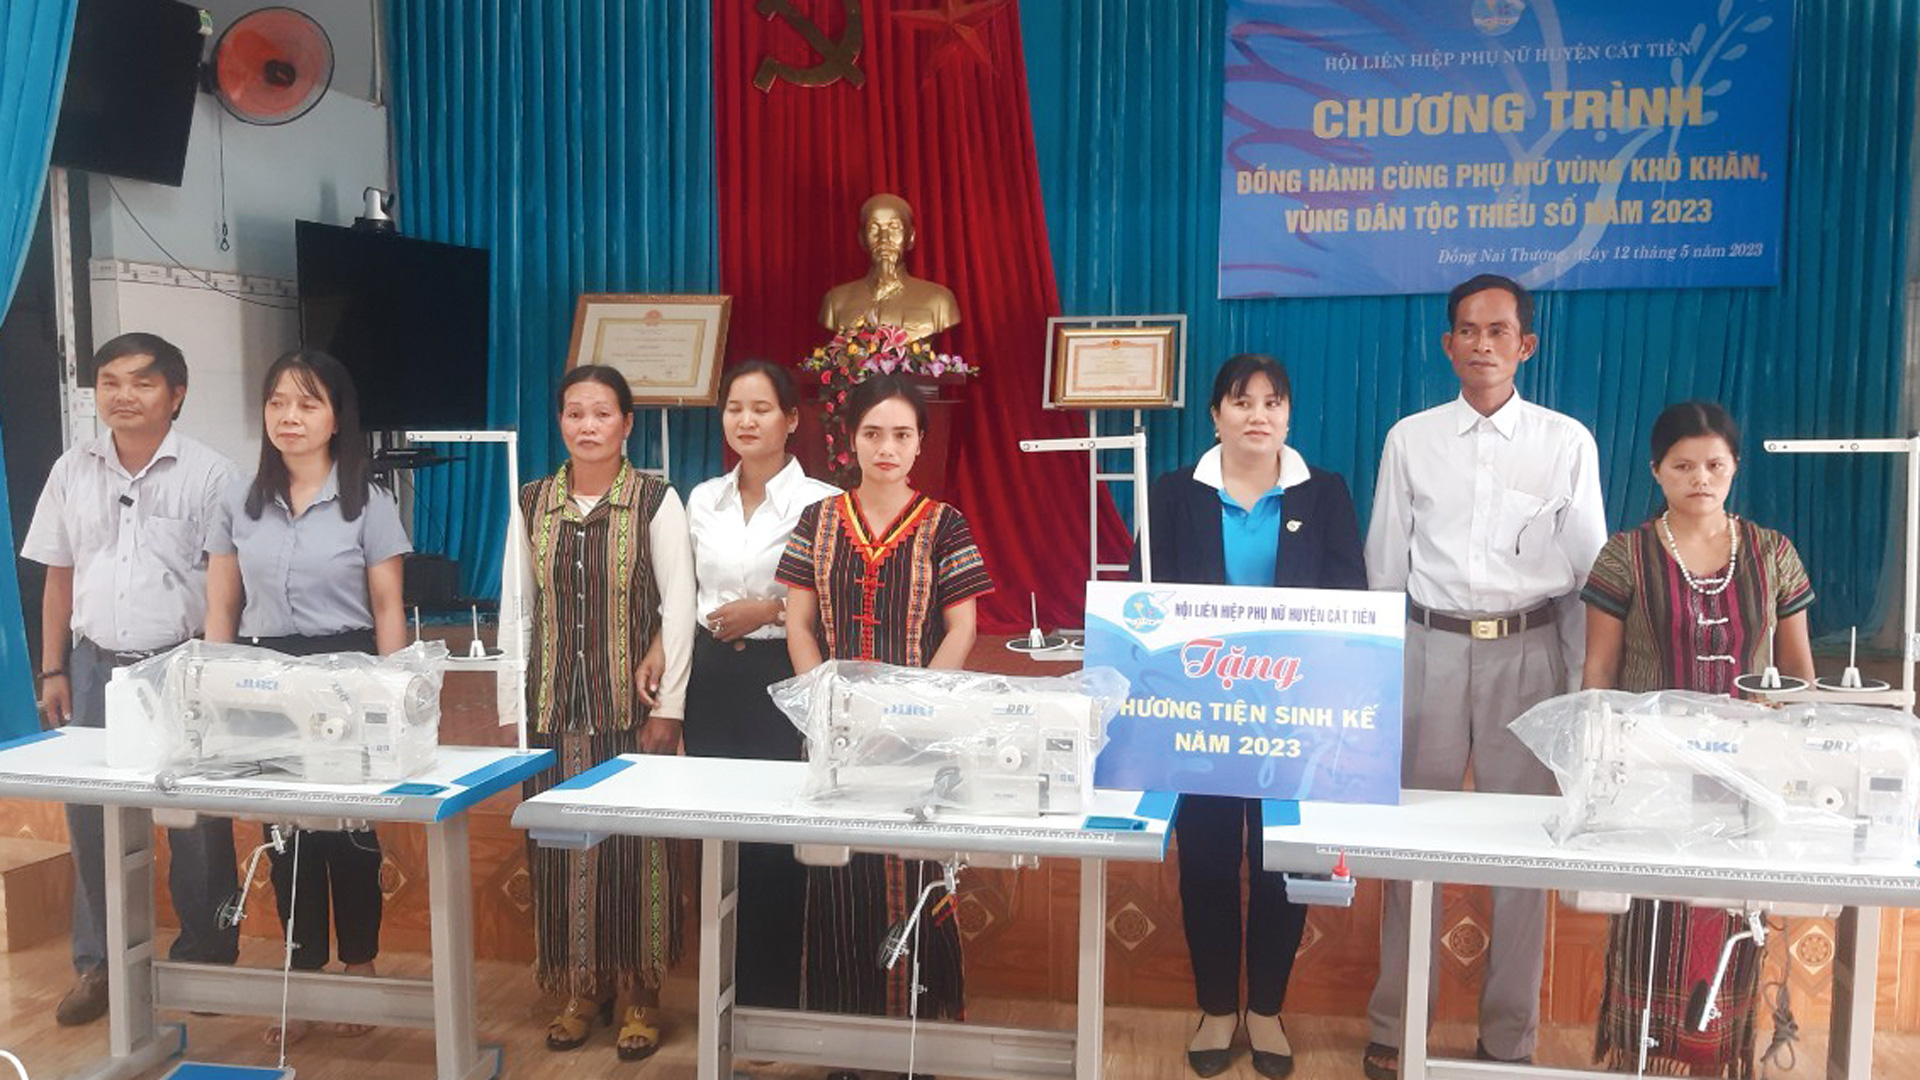 Hội Liên hiệp Phụ nữ huyện Cát Tiên hỗ trợ trao sinh kế
cho người dân xã Đồng Nai Thượng